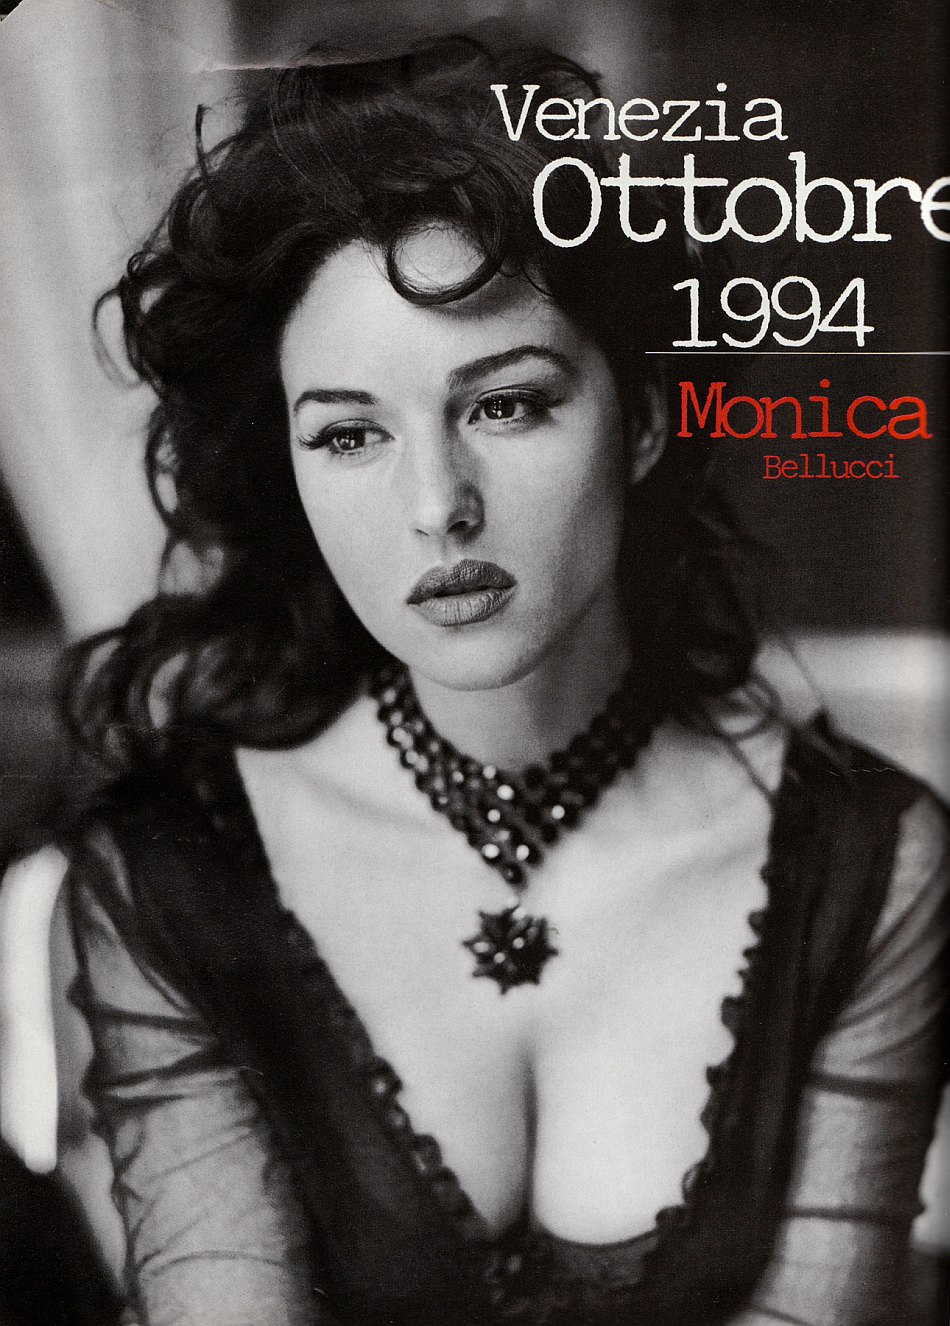 monica bellucci exclusive pics, monica bellucci exclusive photo, monica bellucci exclusive photos, monica bellucci exclusive image